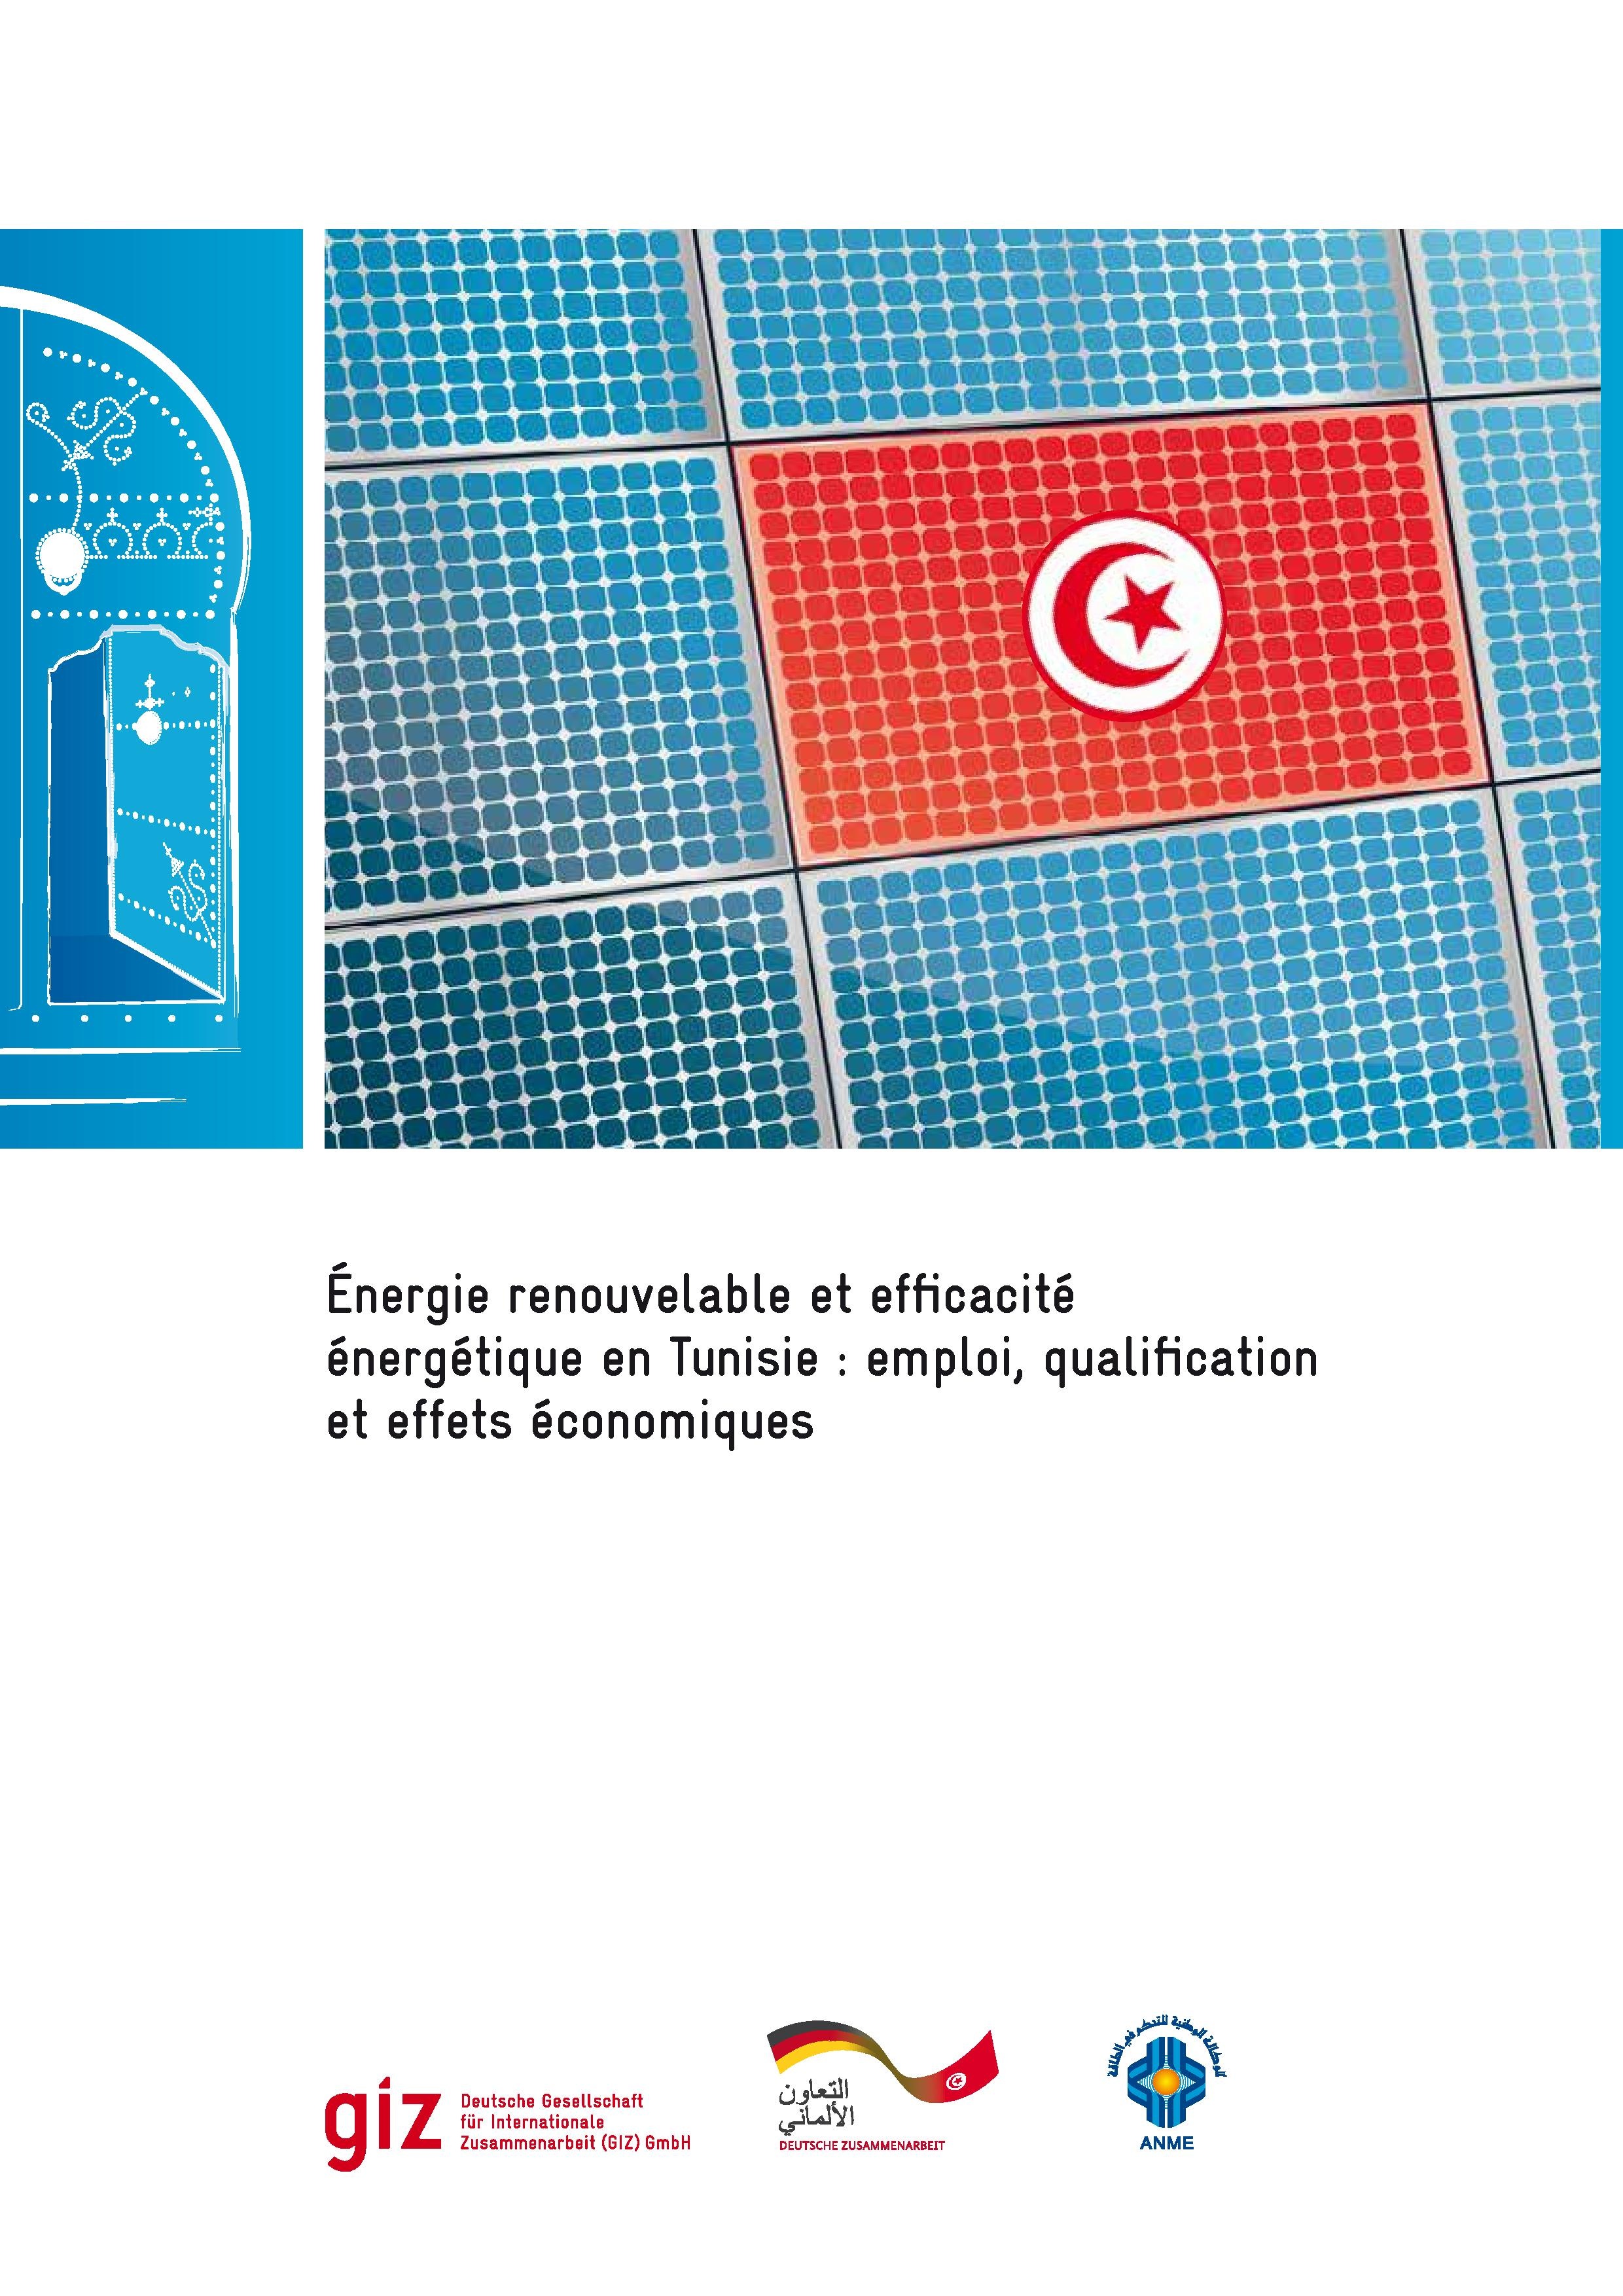 Version francais: Énergie renouvelable et efficacité énergétique en Tunisie : emploi, qualification et effets économiques